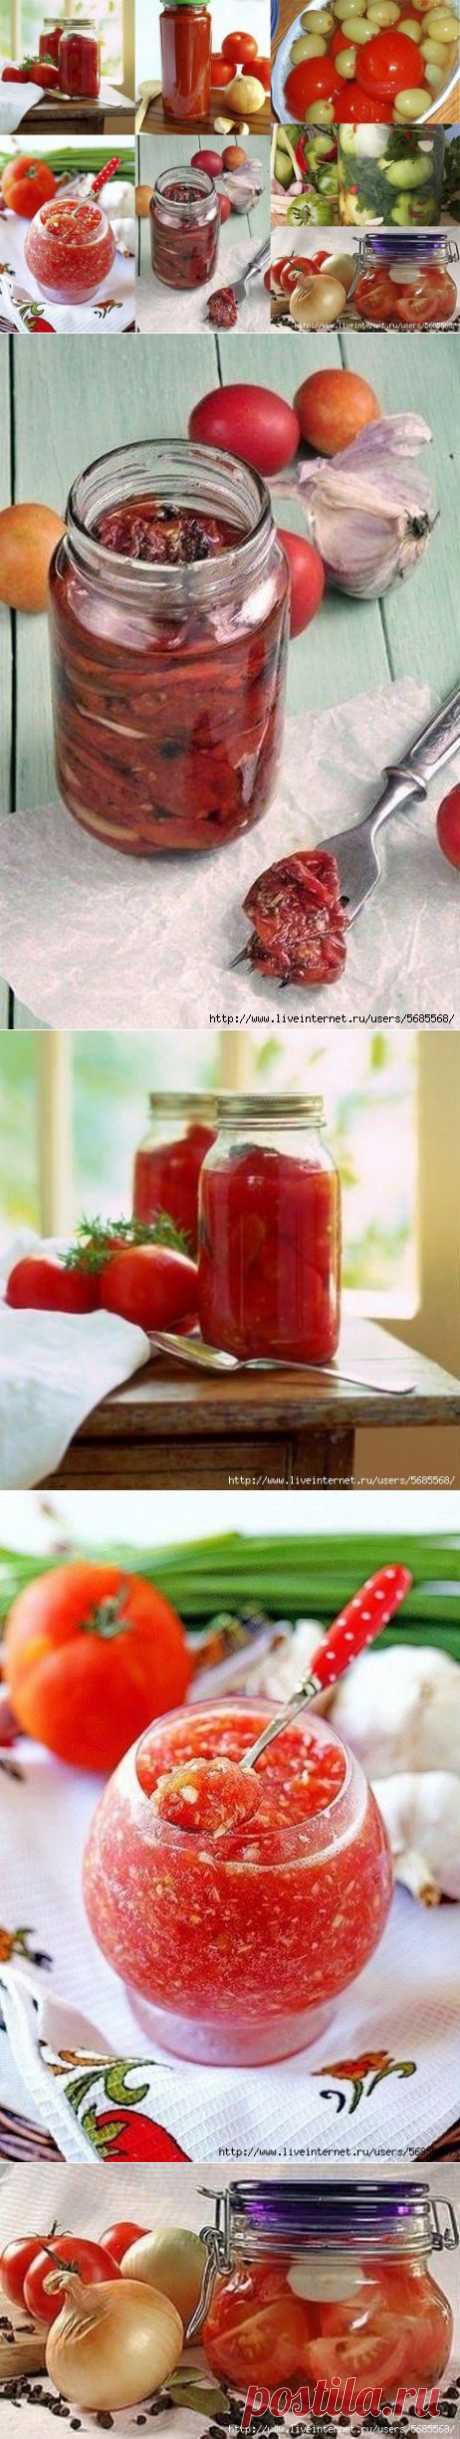 Вяленые томаты в микроволновке и еще 6 рецептов с помидорами на зиму...